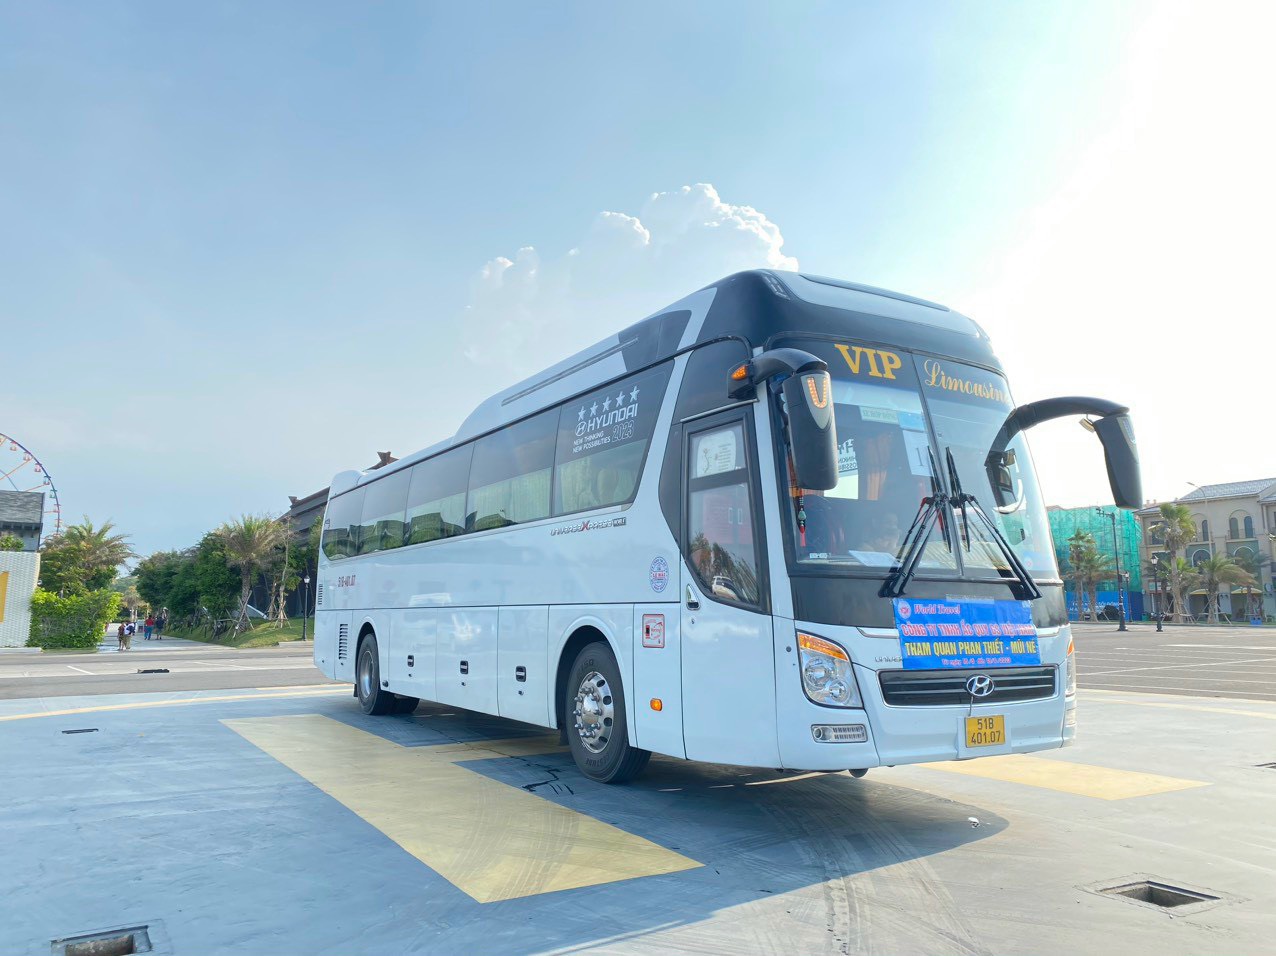 Cho thuê xe du lịch tại Định Quán Đồng Nai